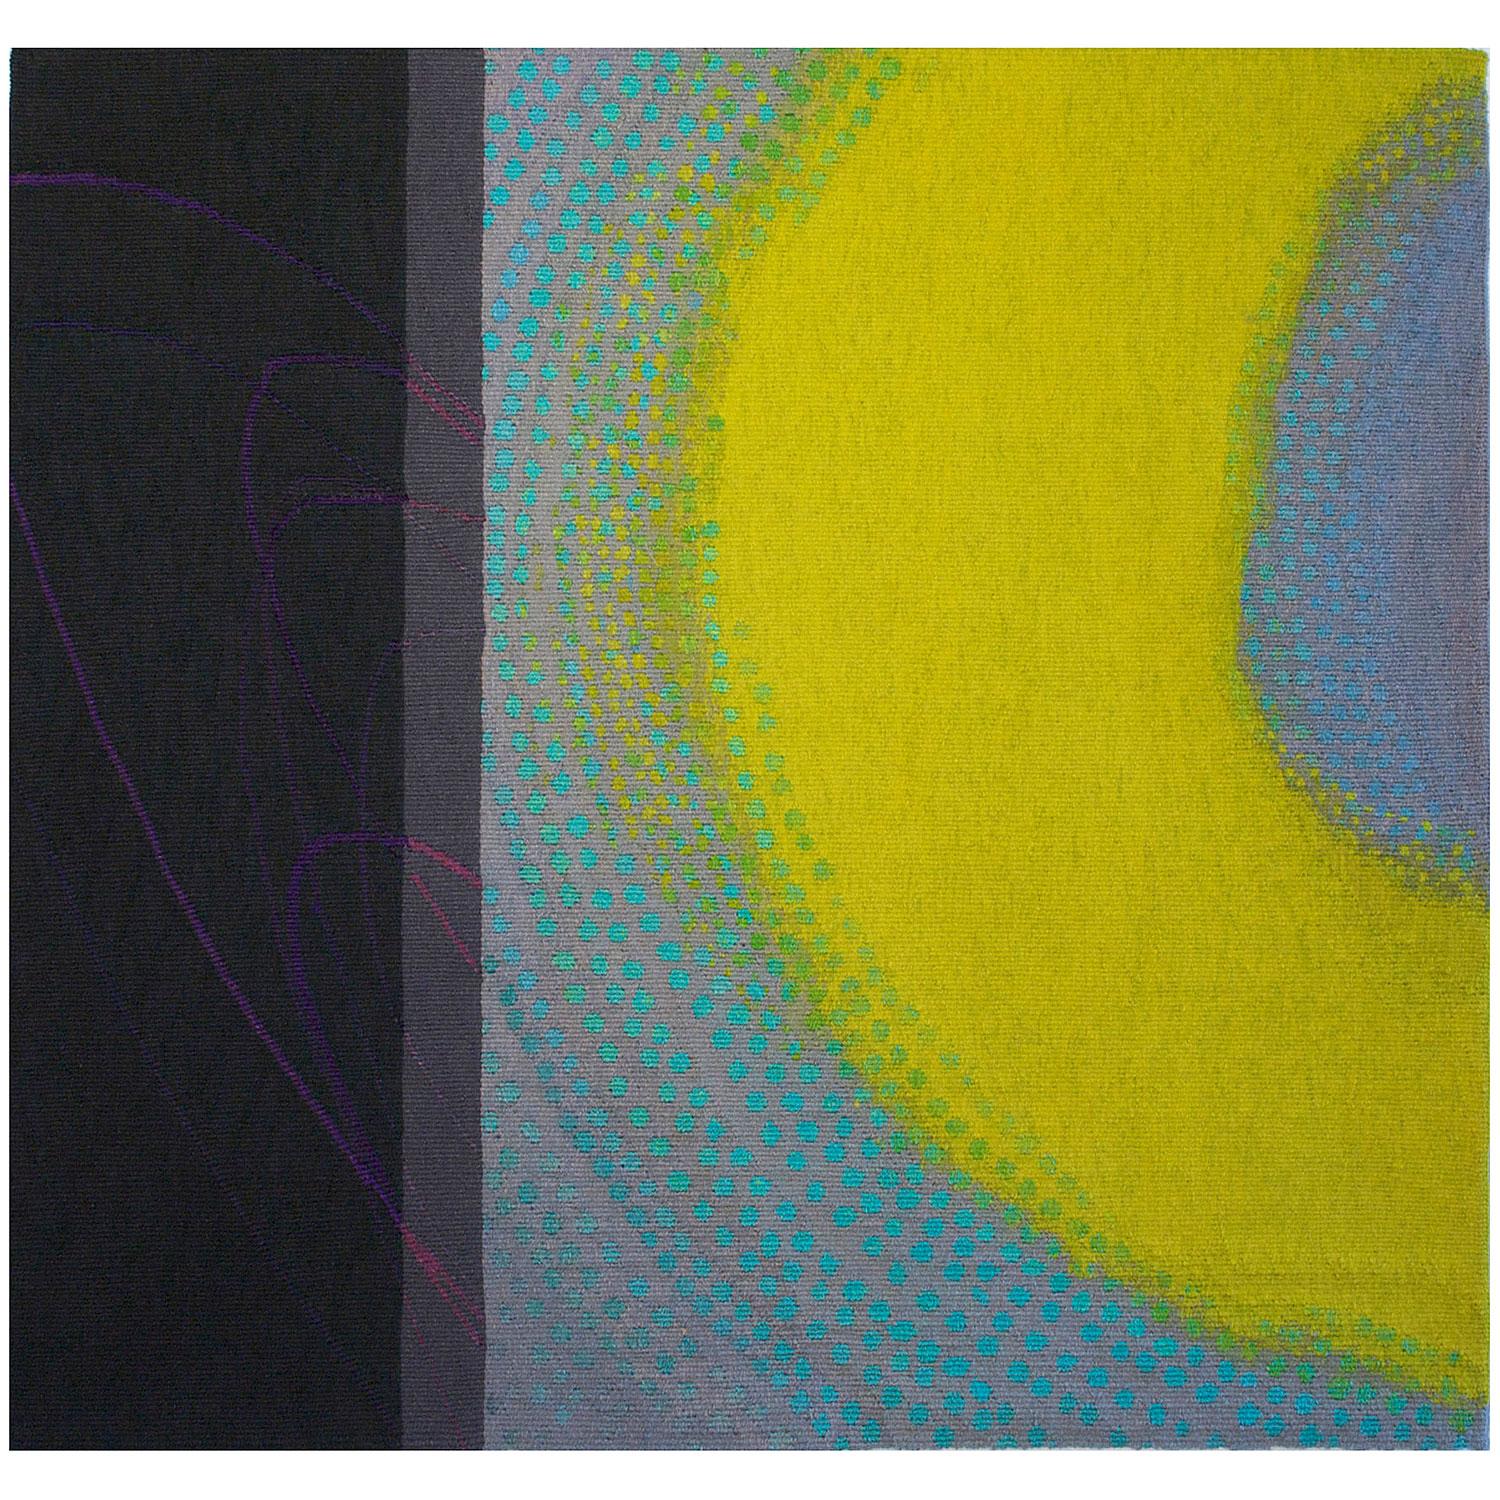 Limettenglühen,  Jo Barker, gewebt auf Baumwollkette unter Verwendung von Wolle, Baumwolle, Leinen, Seide und Stickgarn, 29" x 30,75" x  1.5", 2010

Dieses farbenfrohe zeitgenössische abstrakte Textil stammt von der britischen Faserkünstlerin Jo